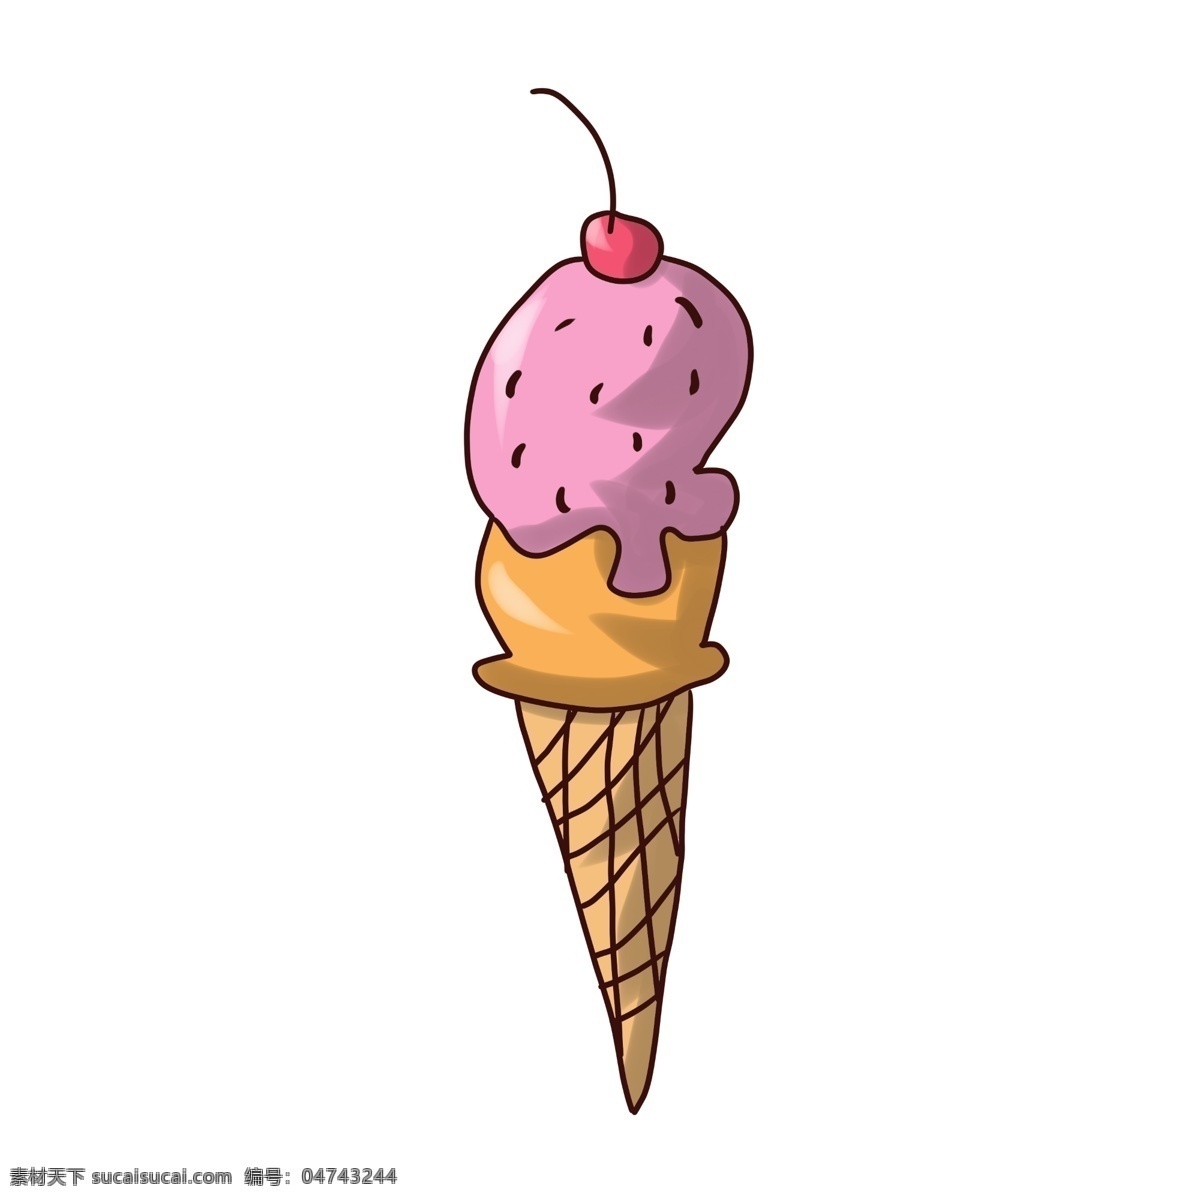 粉色 甜筒 冰激凌 插画 粉色冰激凌 樱桃口味 蛋筒雪糕 夏日冰品 创意美食插画 西式